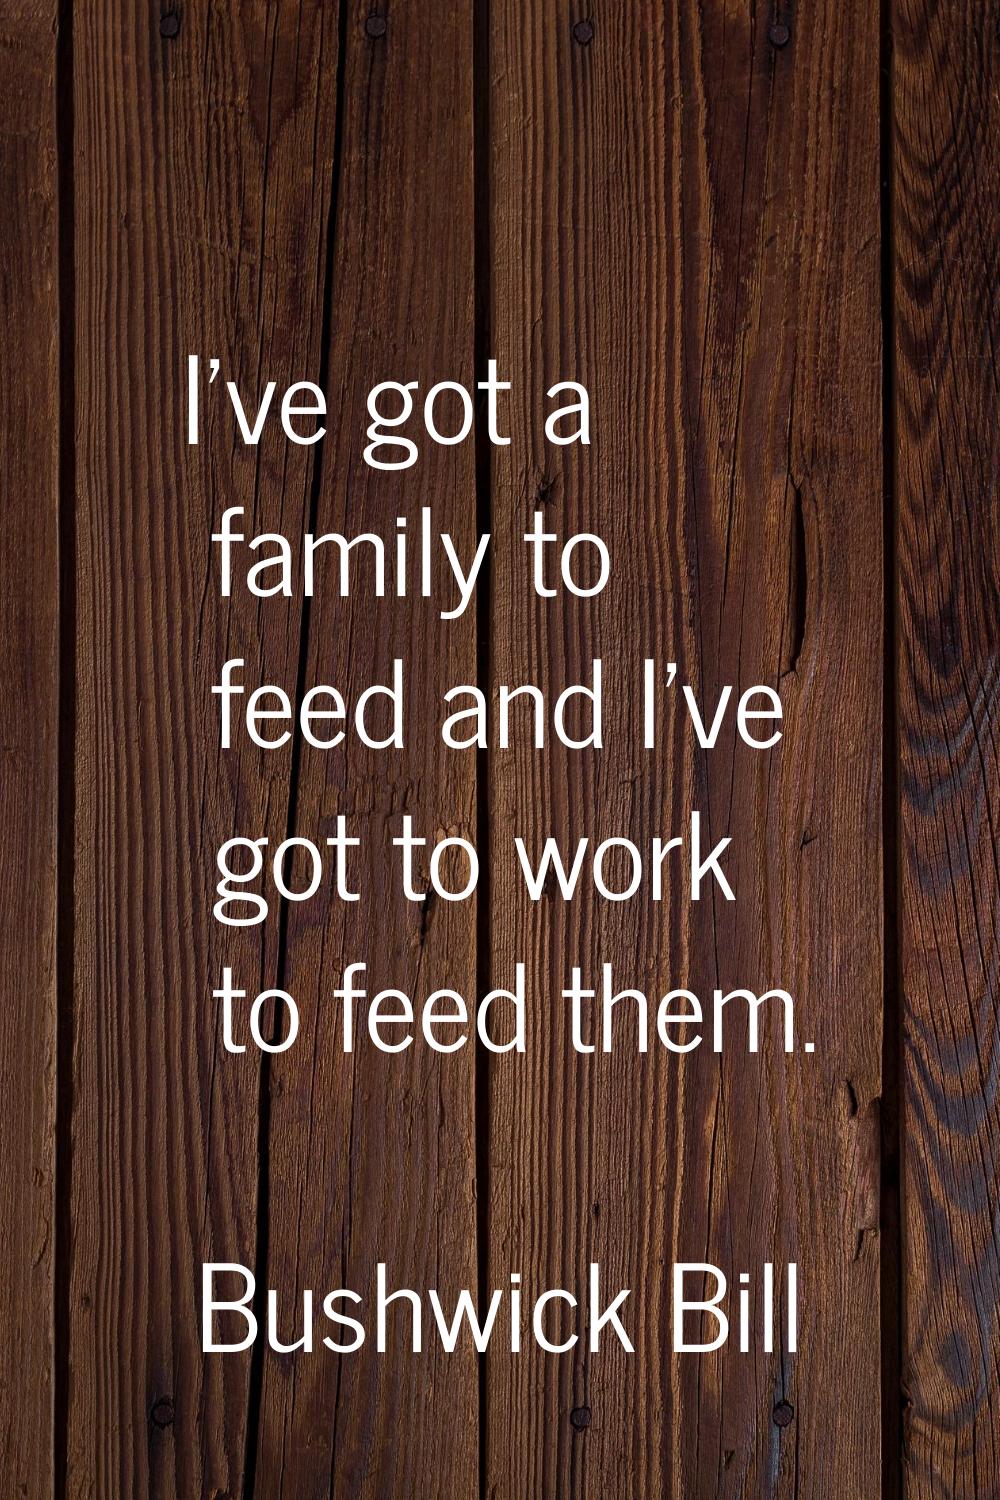 I've got a family to feed and I've got to work to feed them.